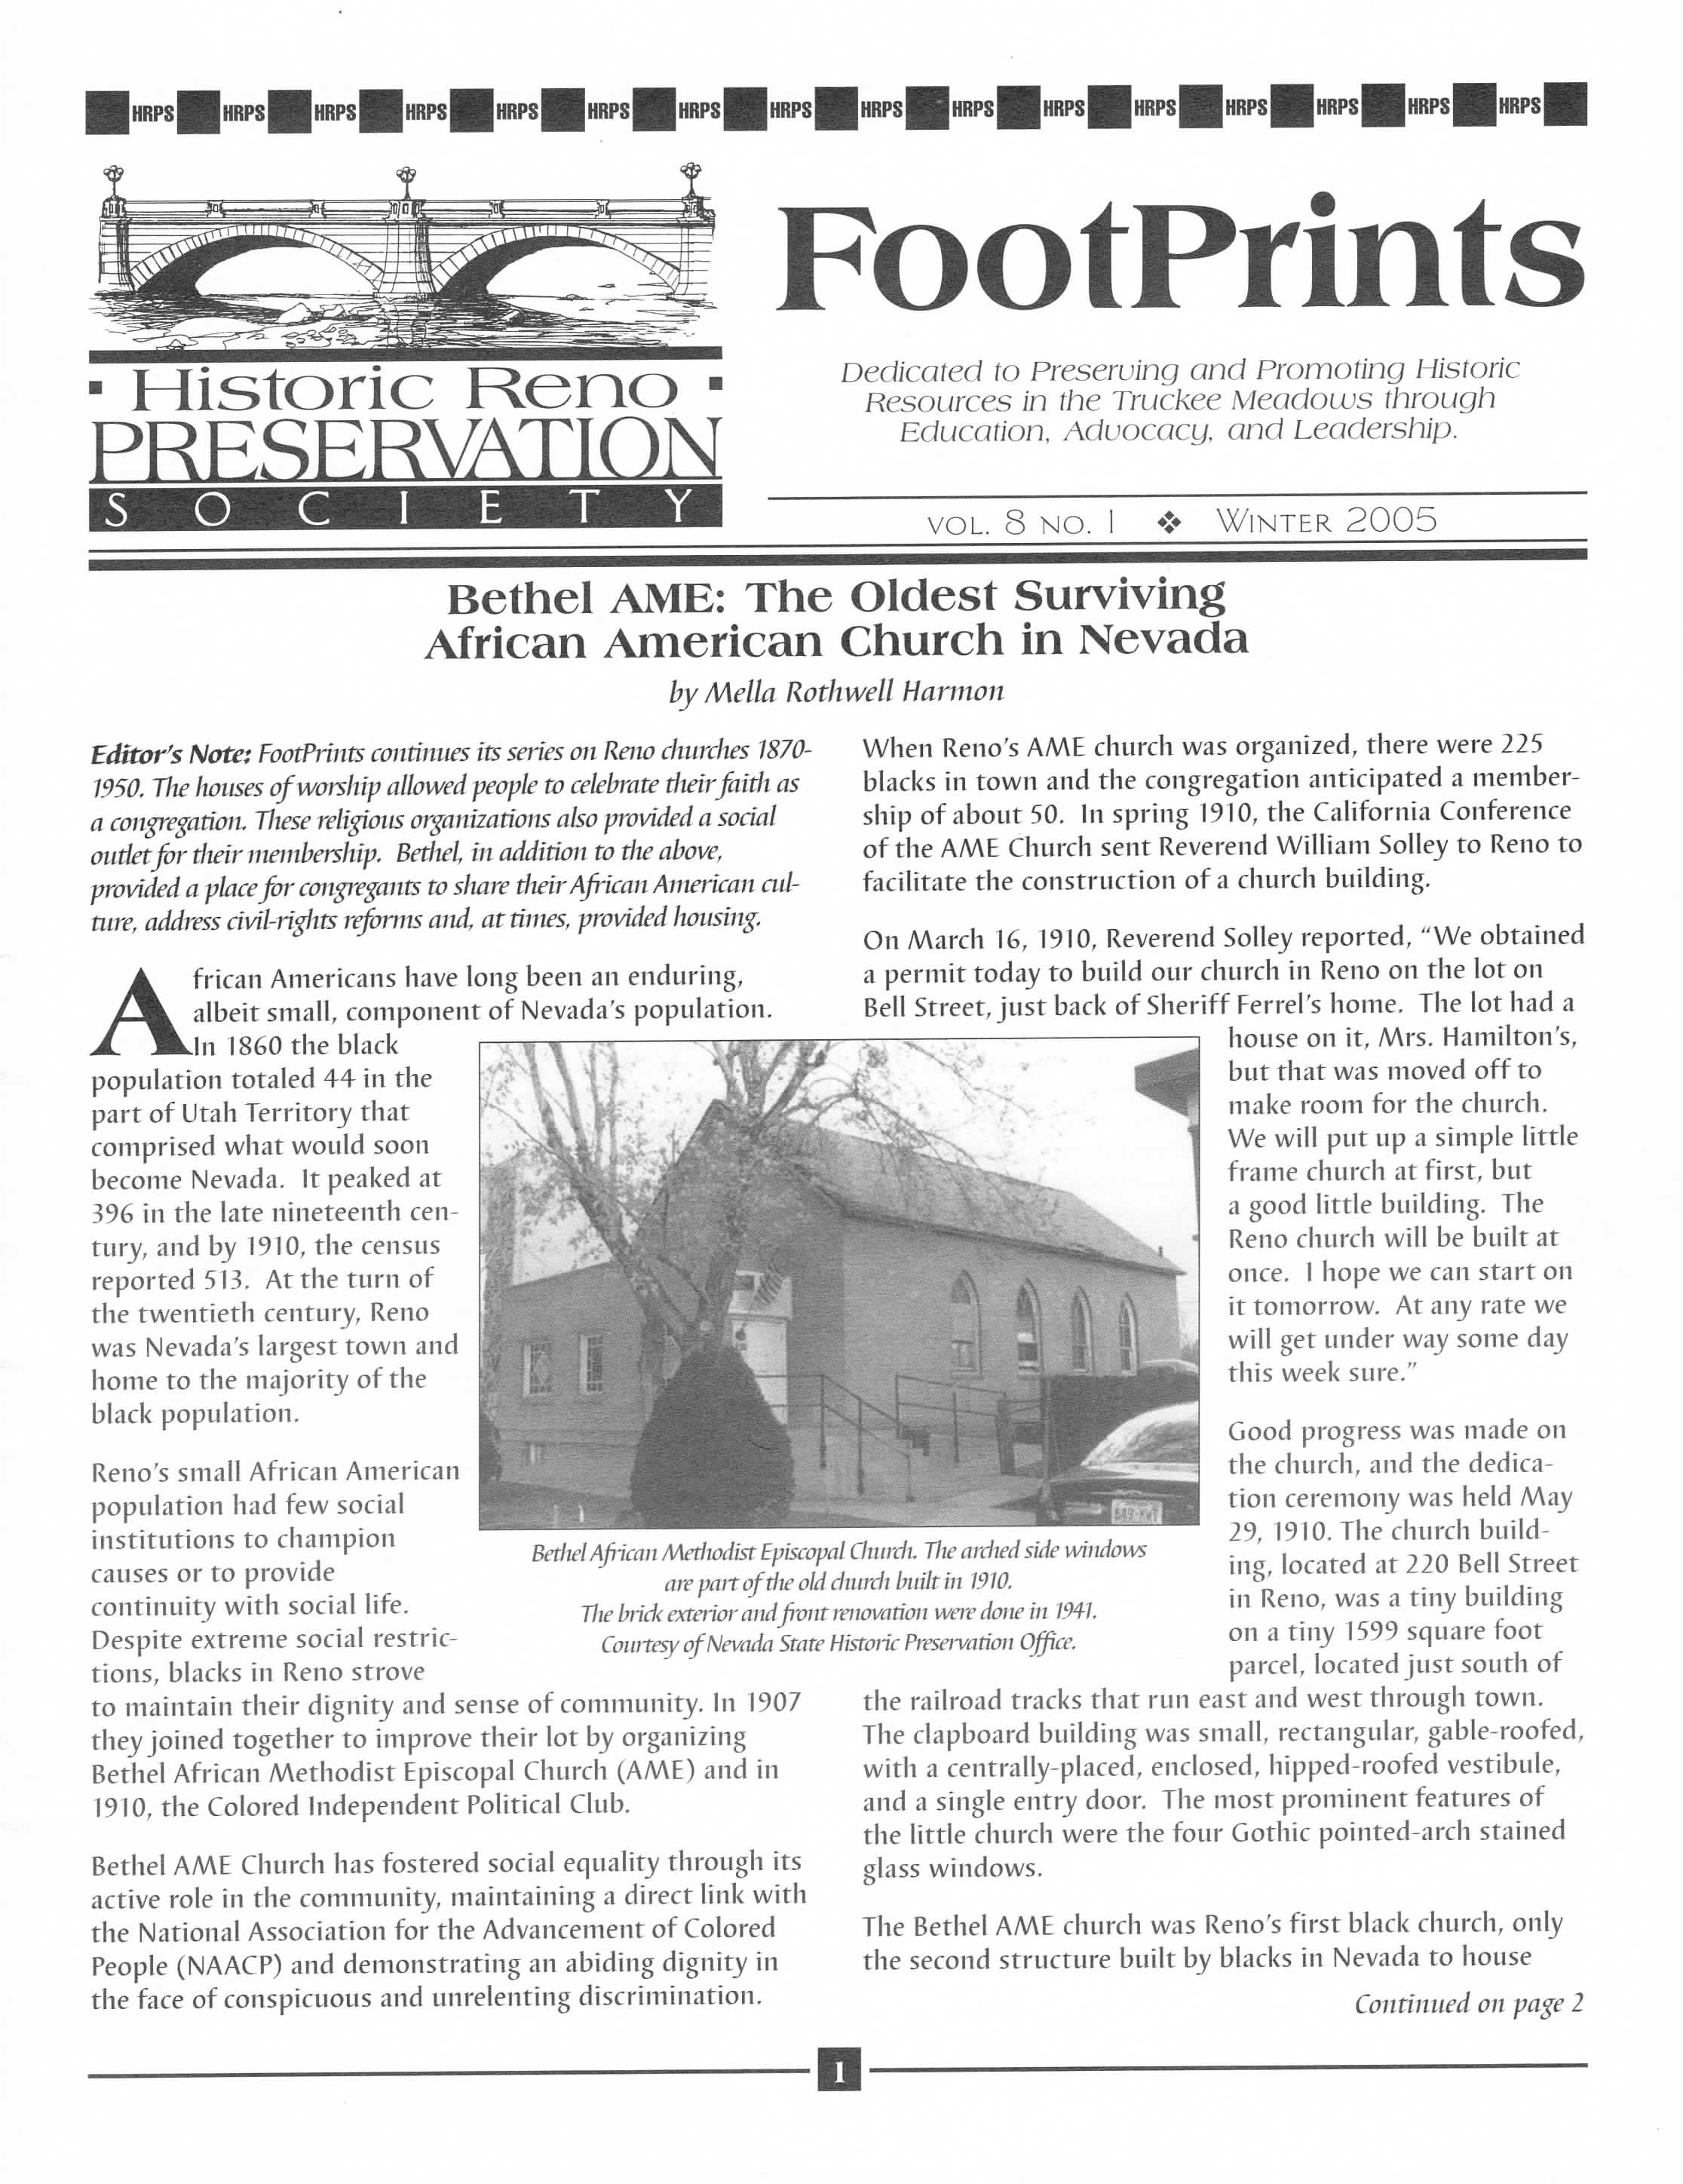 FootPrints Volume 8, Number 1, Winter 2005